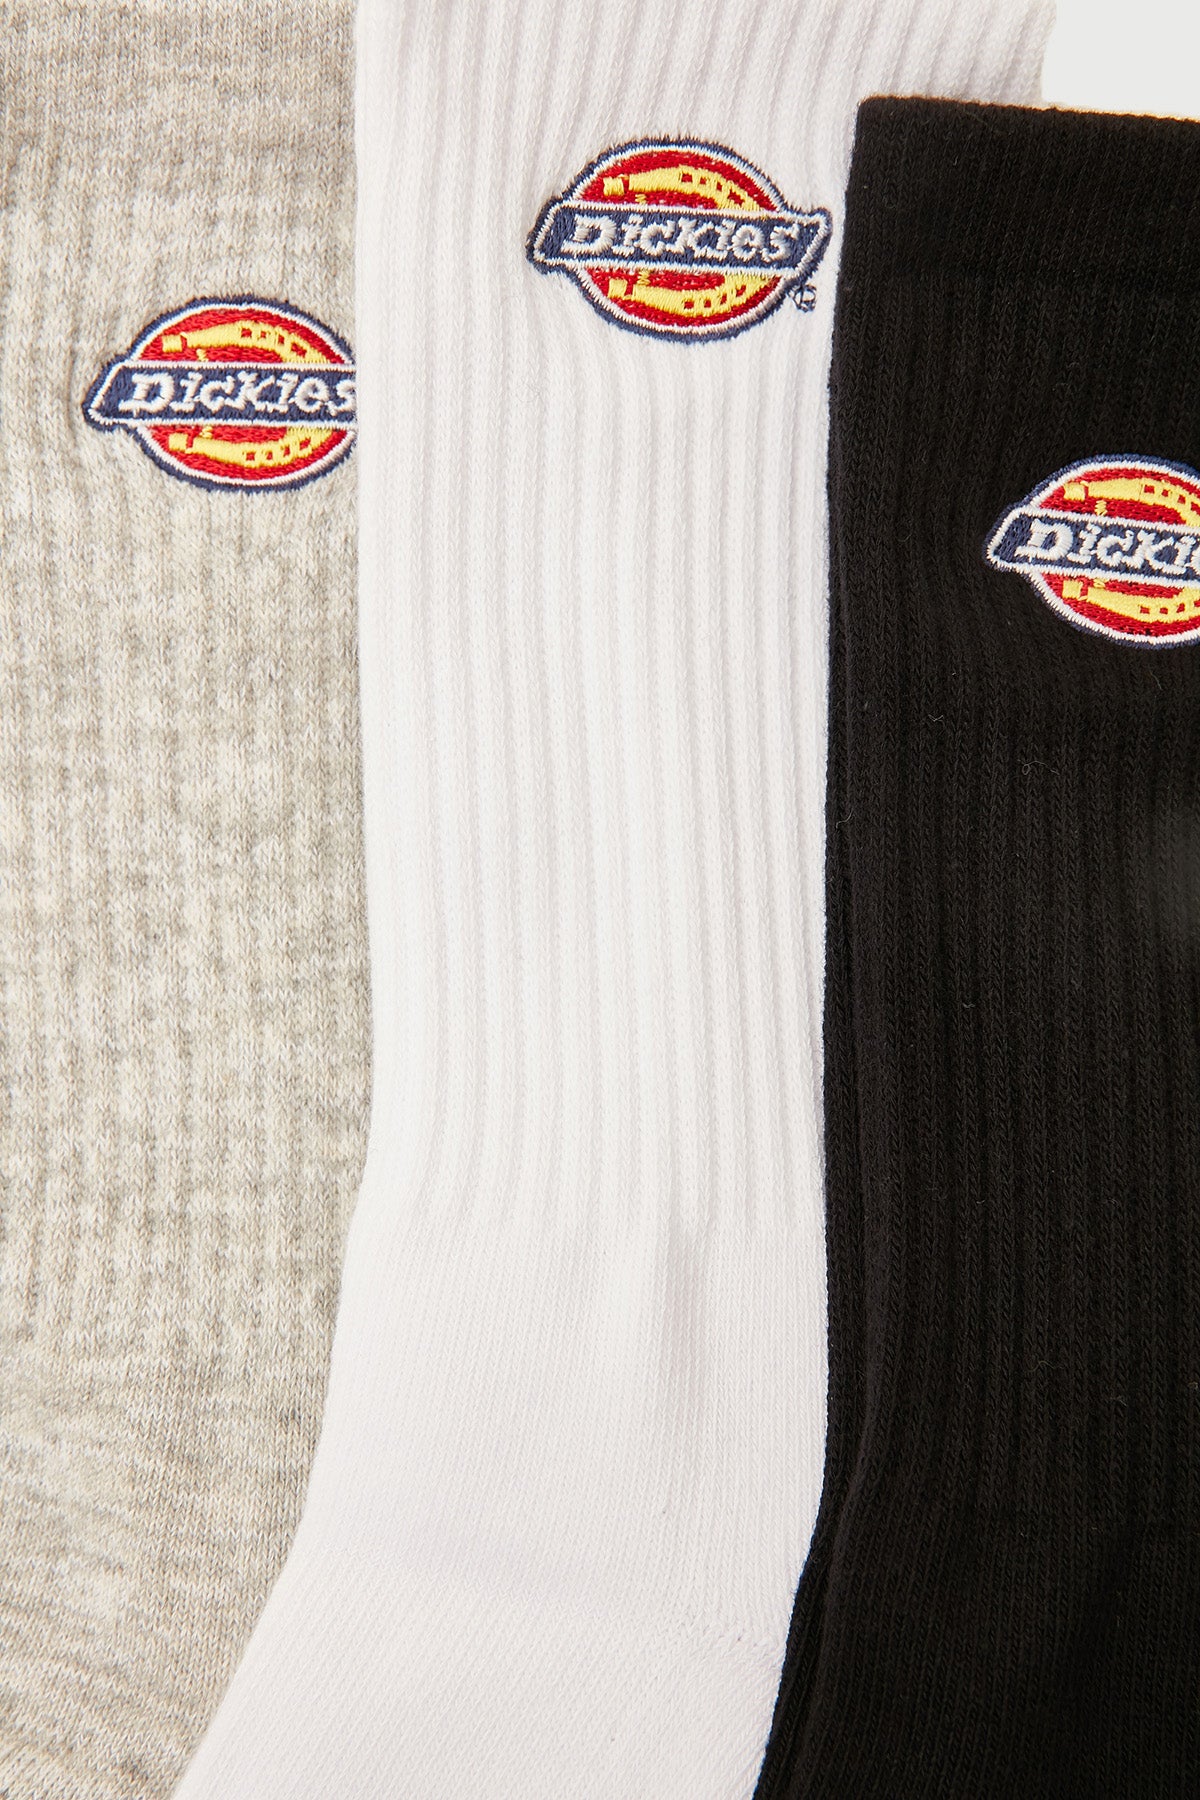 Dickies H.S Rockwood Crew Socks 3 Pack Black/Grey Marle/White